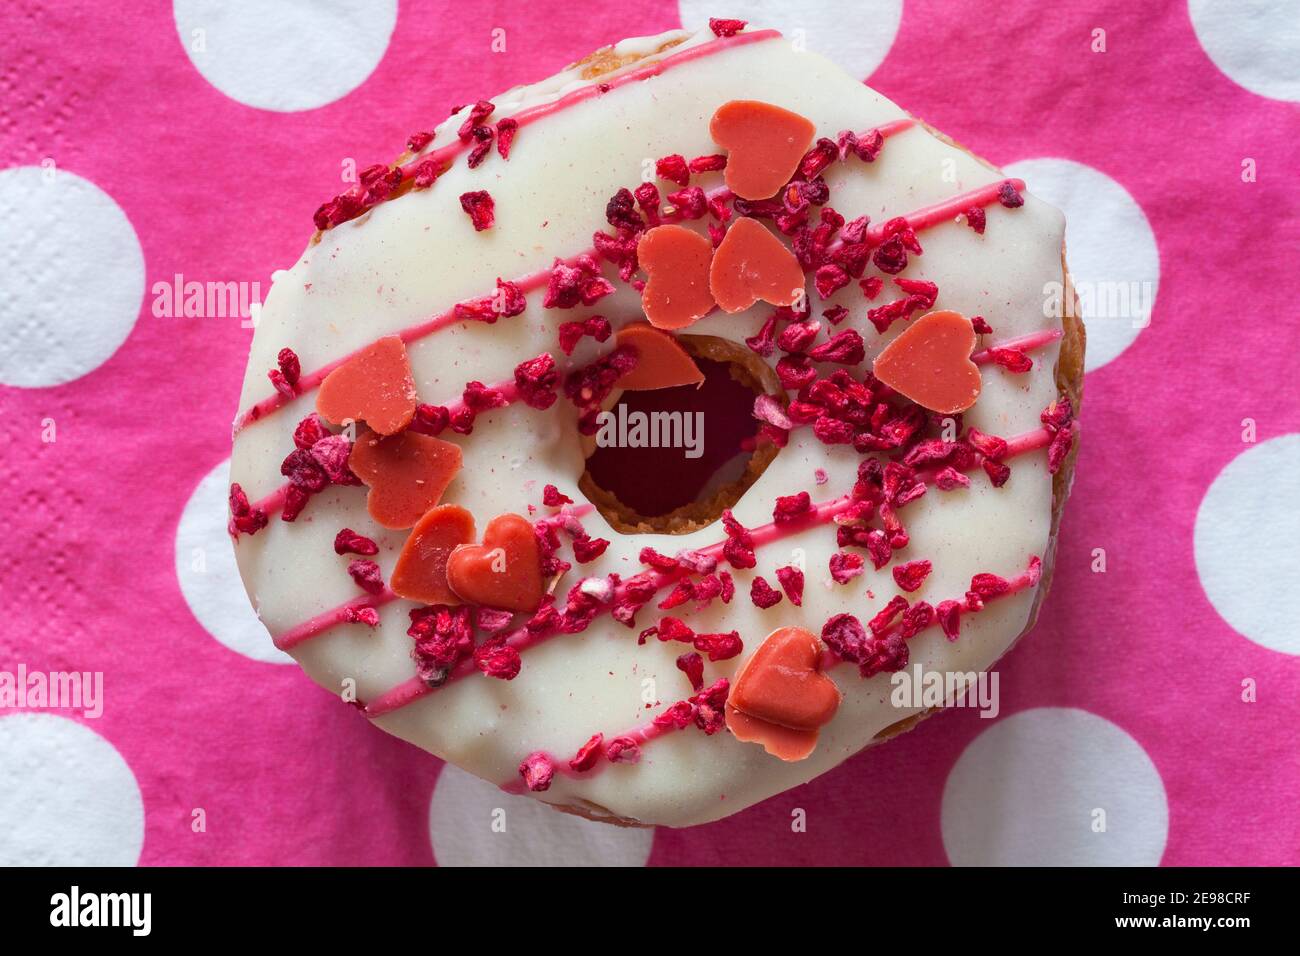 Love Nut Yumnut de M&S prêt pour la Saint-Valentin sur une serviette de table à pois roses – nourriture pour la saint-valentin de l'amour Banque D'Images